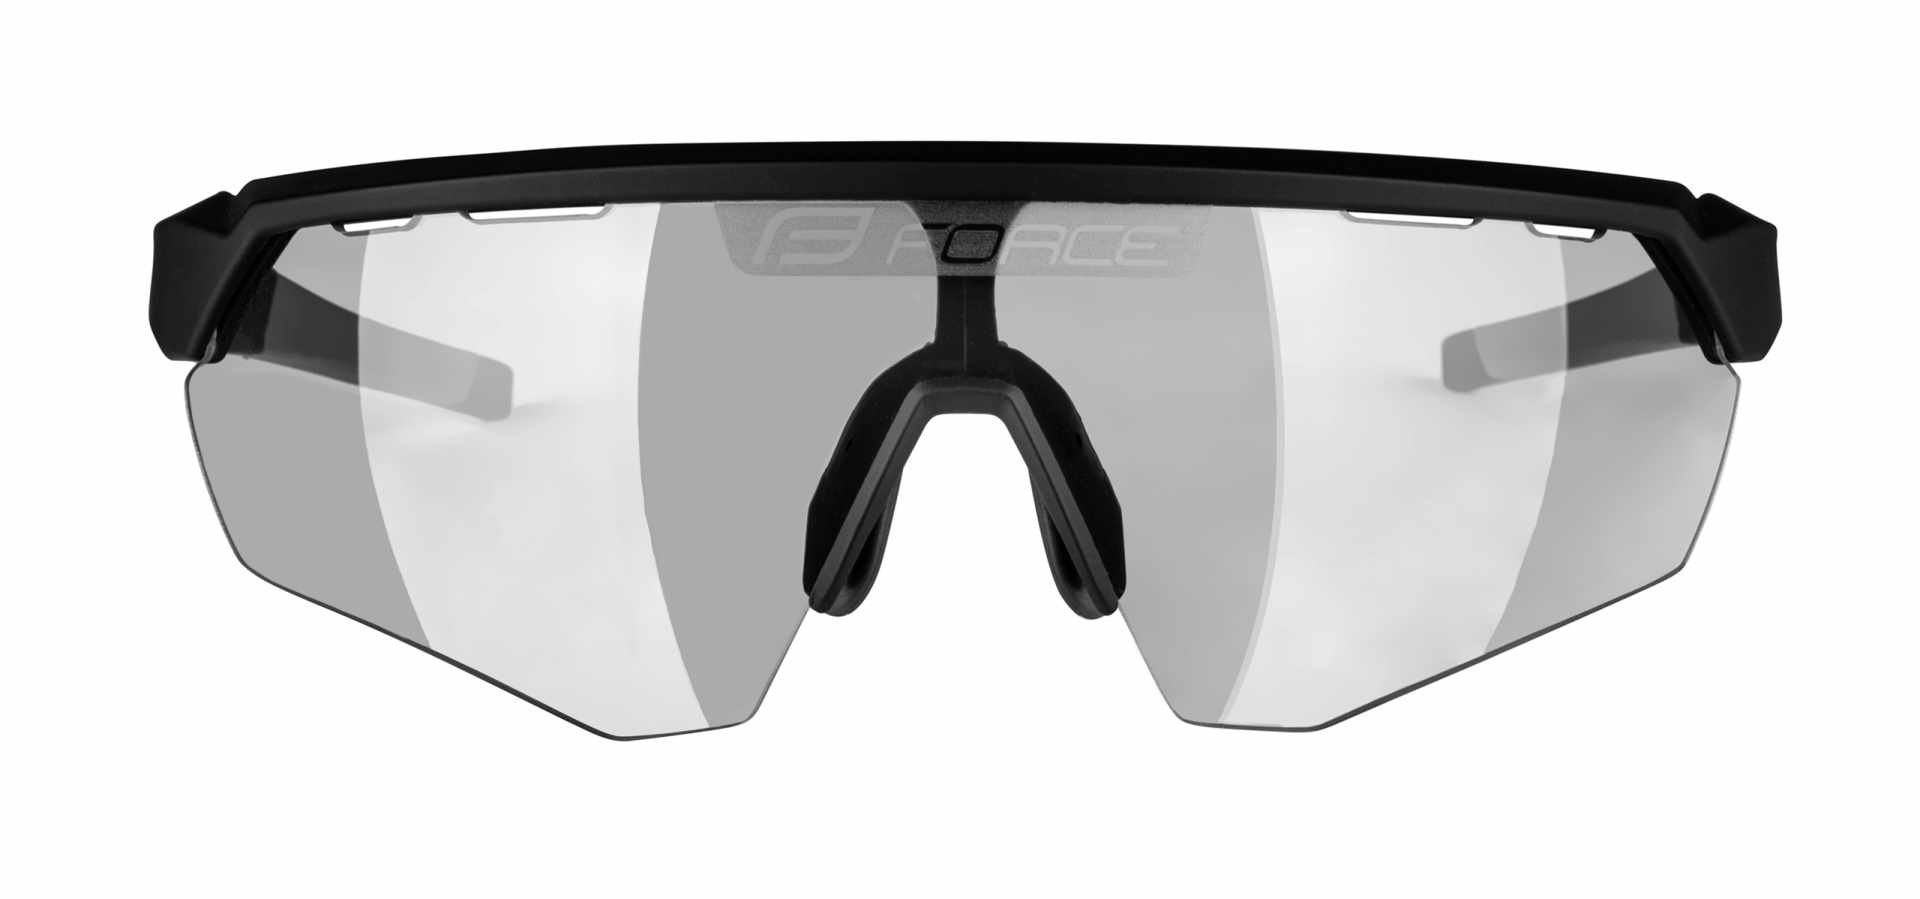 brýle FORCE ENIGMA černo-šedé mat.,fotochrom. sklo